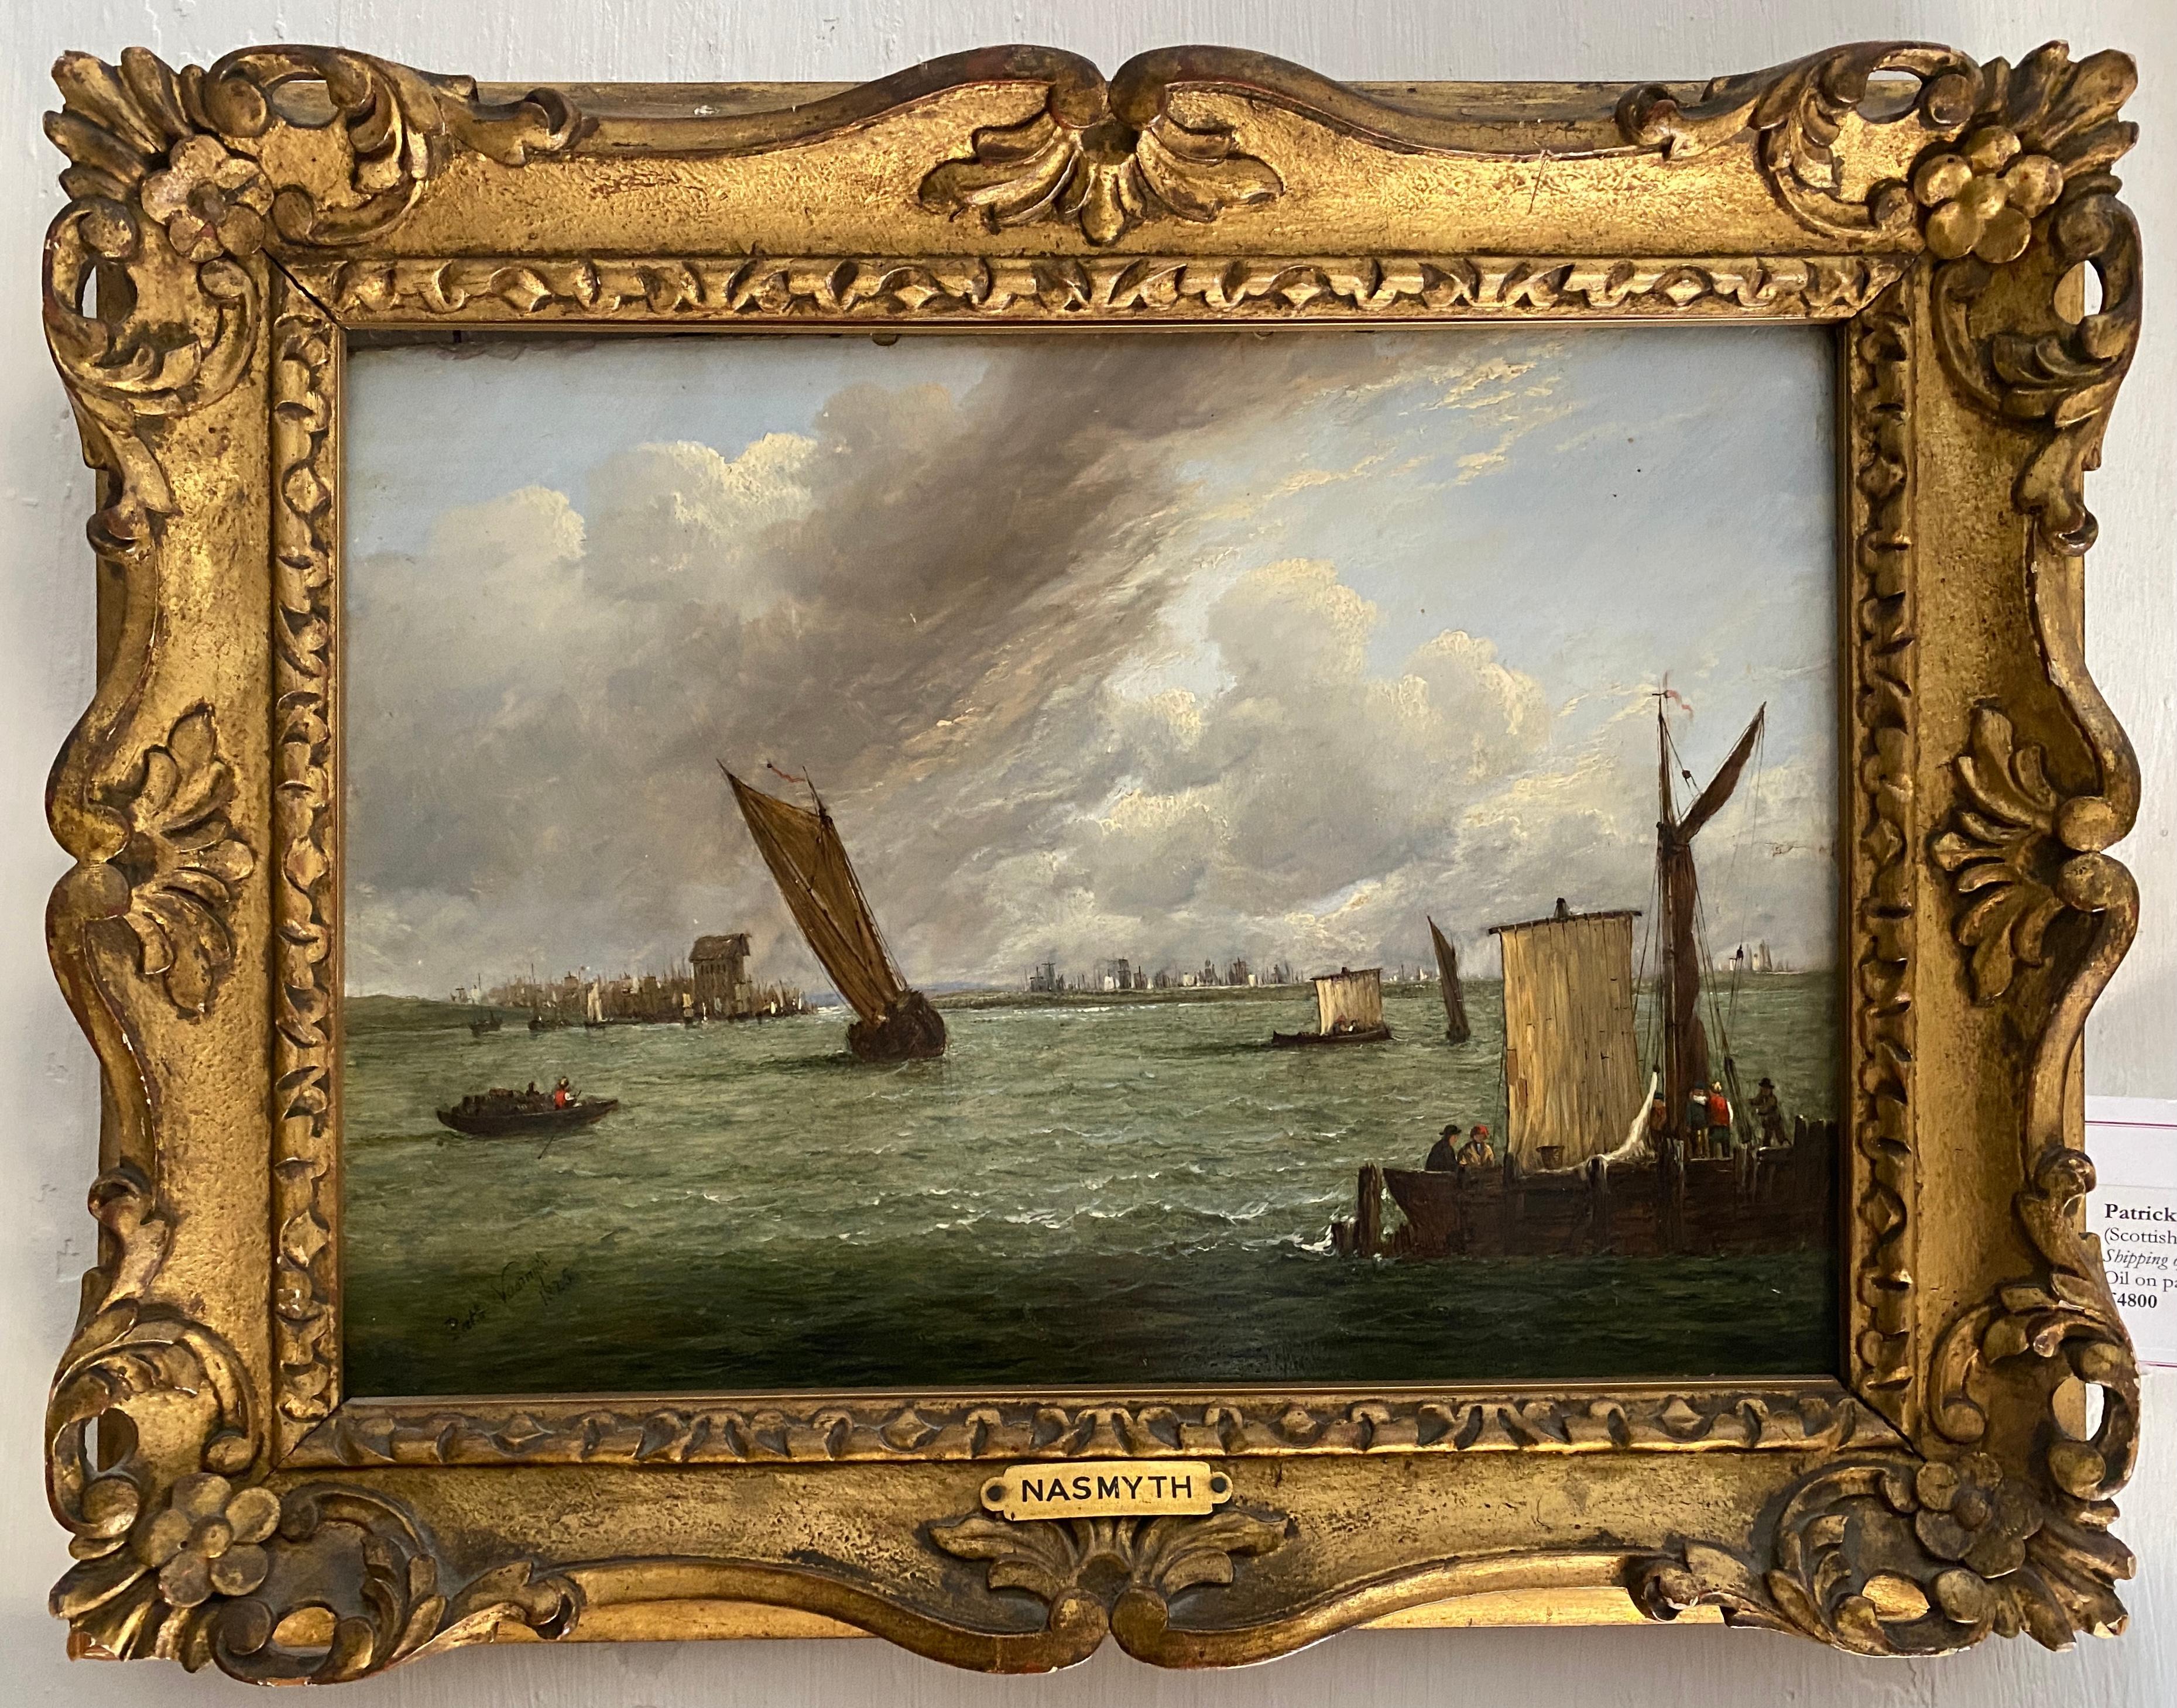 Le transport maritime au large de la côte par Patrick Nasmyth. Signé et daté 1825, une très bonne pièce dans un cadre fantastique.